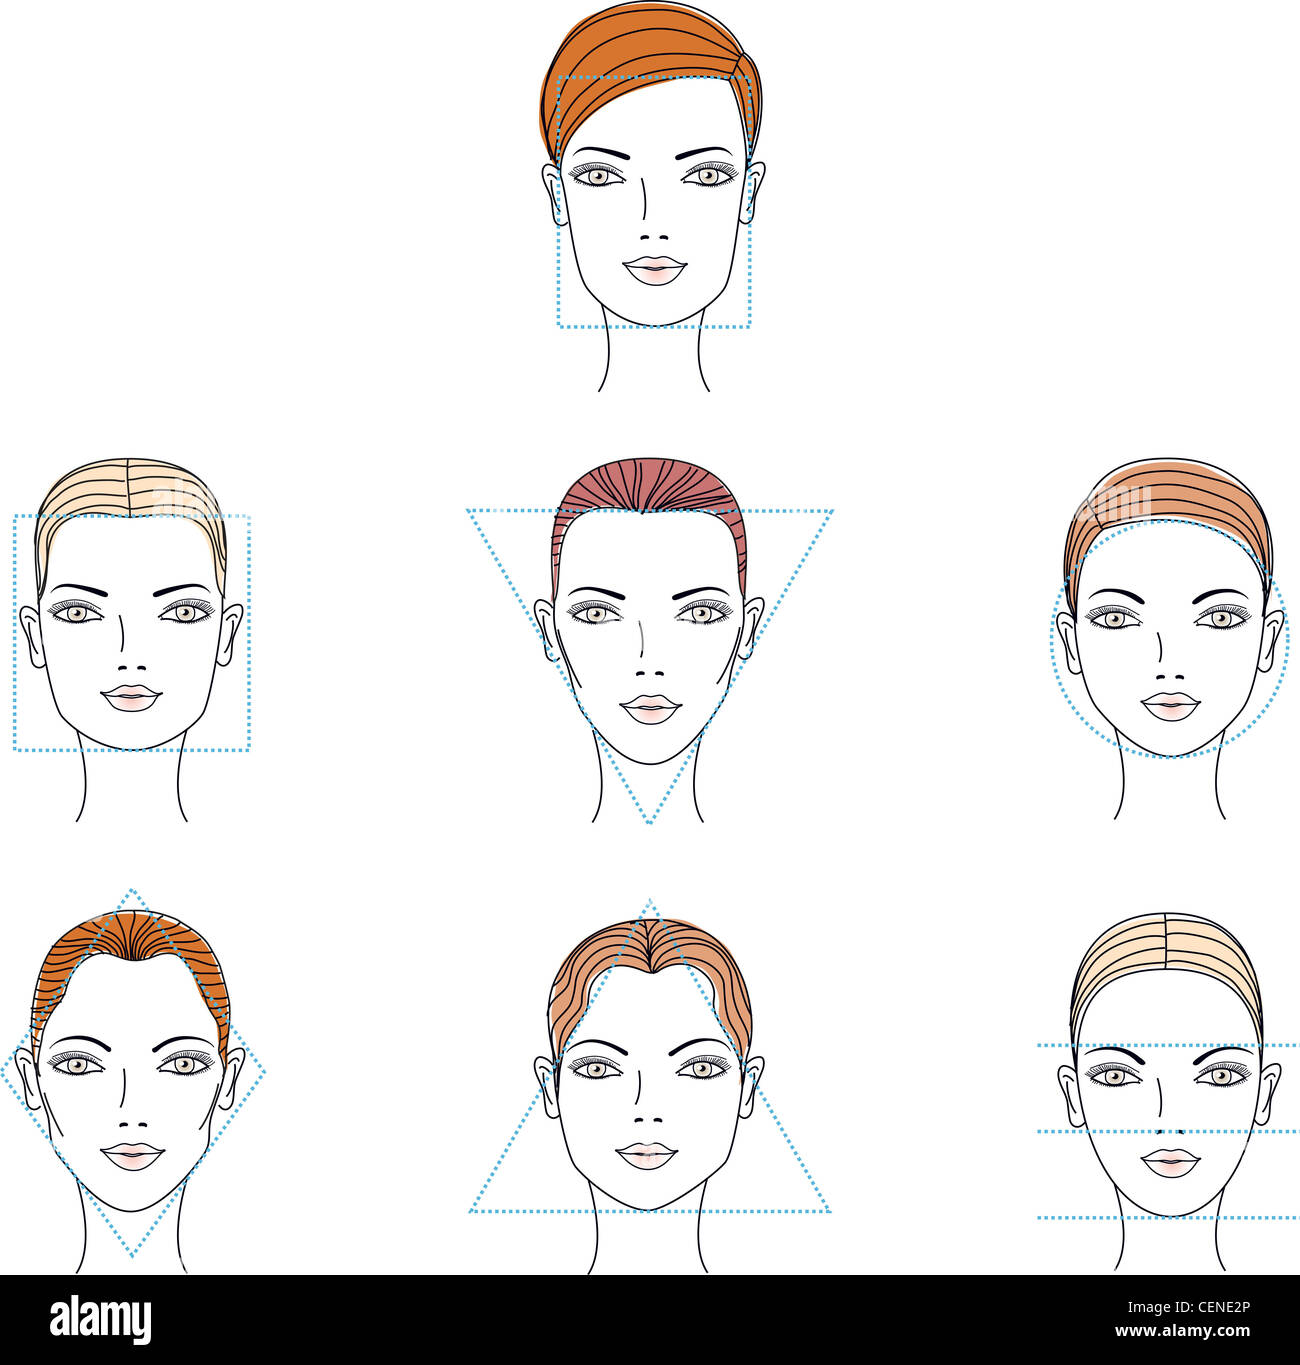 Verschiedene Gesichtsformen: Rechteckfläche, quadratisches Gesicht,  dreieckiges Gesicht, rundes Gesicht, Diamant-Gesicht und einem Gesicht  gleich Entfernungen Stockfotografie - Alamy